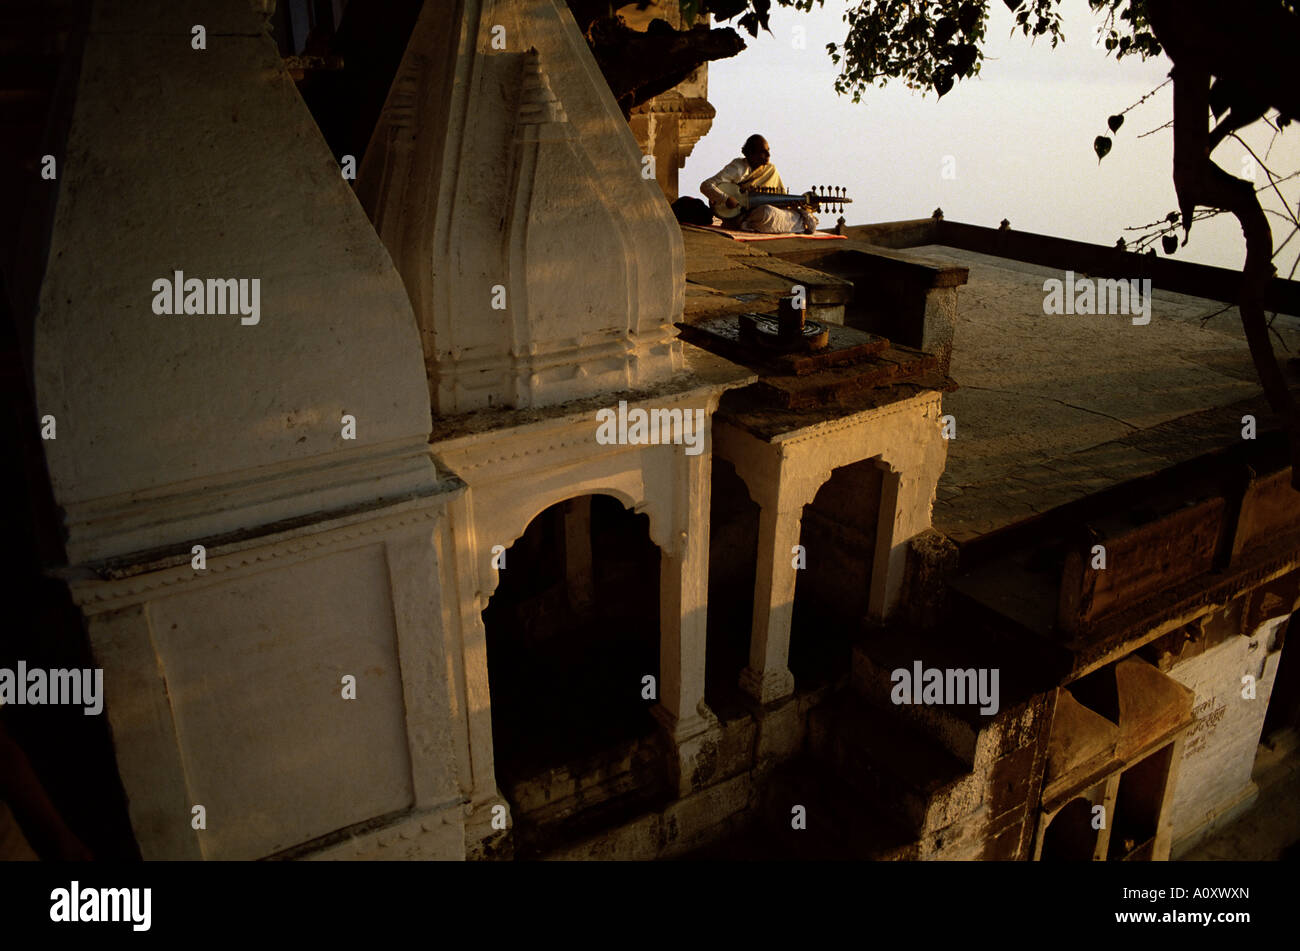 Homme jouant de sarod sur terrasse Inde Asie Banque D'Images